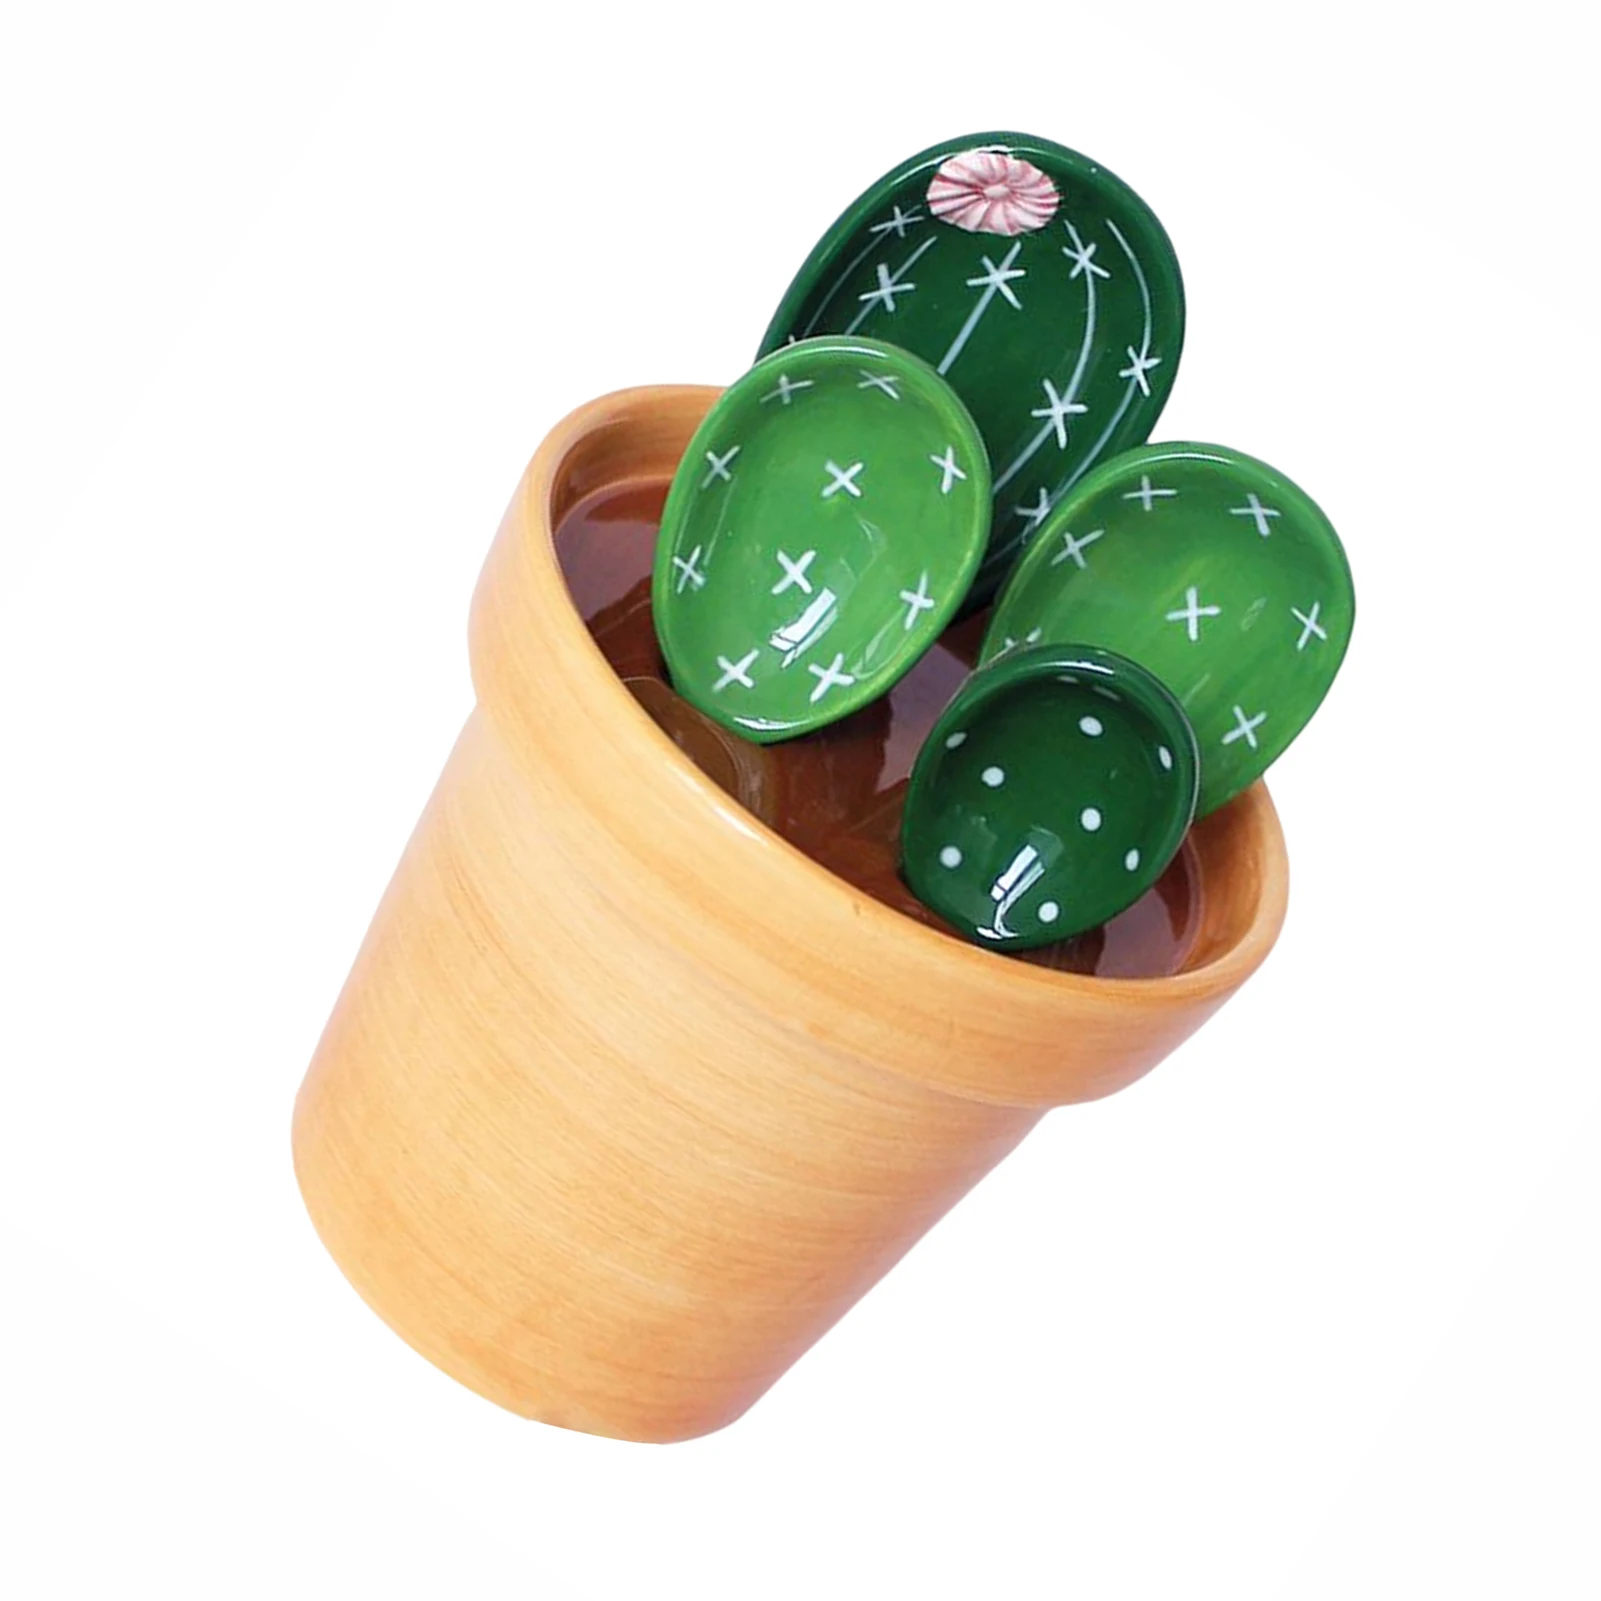 cuilleres-a-mesurer-mignonnes-ensemble-de-cuisson-cuilleres-a-soupe-decoratives-en-forme-de-cactus-pour-cafe-cuillere-a-sel